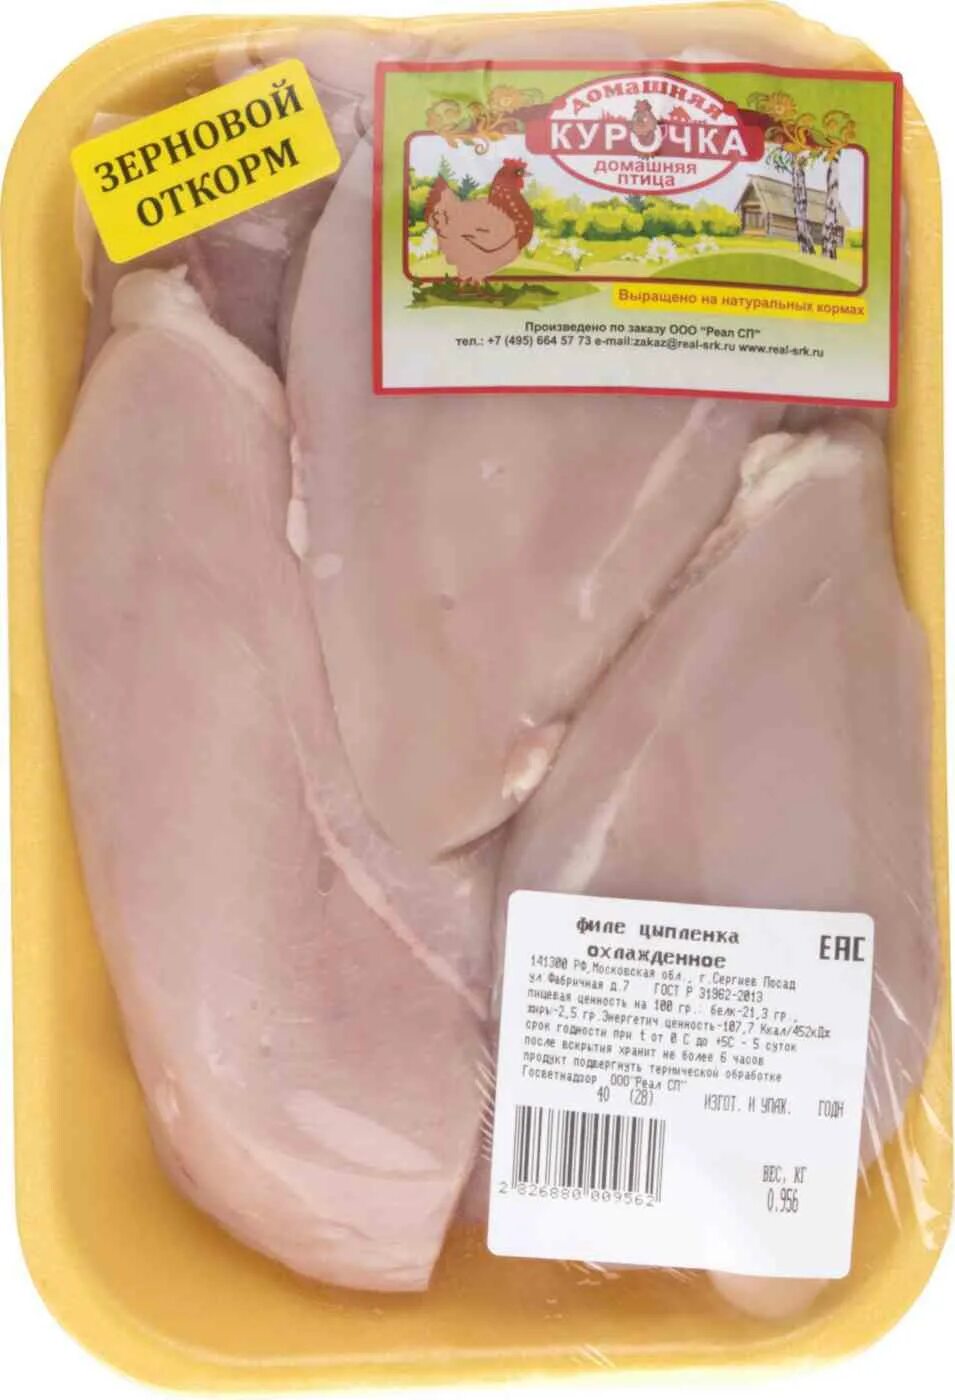 Куриное филе в упаковке. Филе курицы в упаковке. Филе грудки курицы в упаковке. Филе грудки курицы ~ 850г.